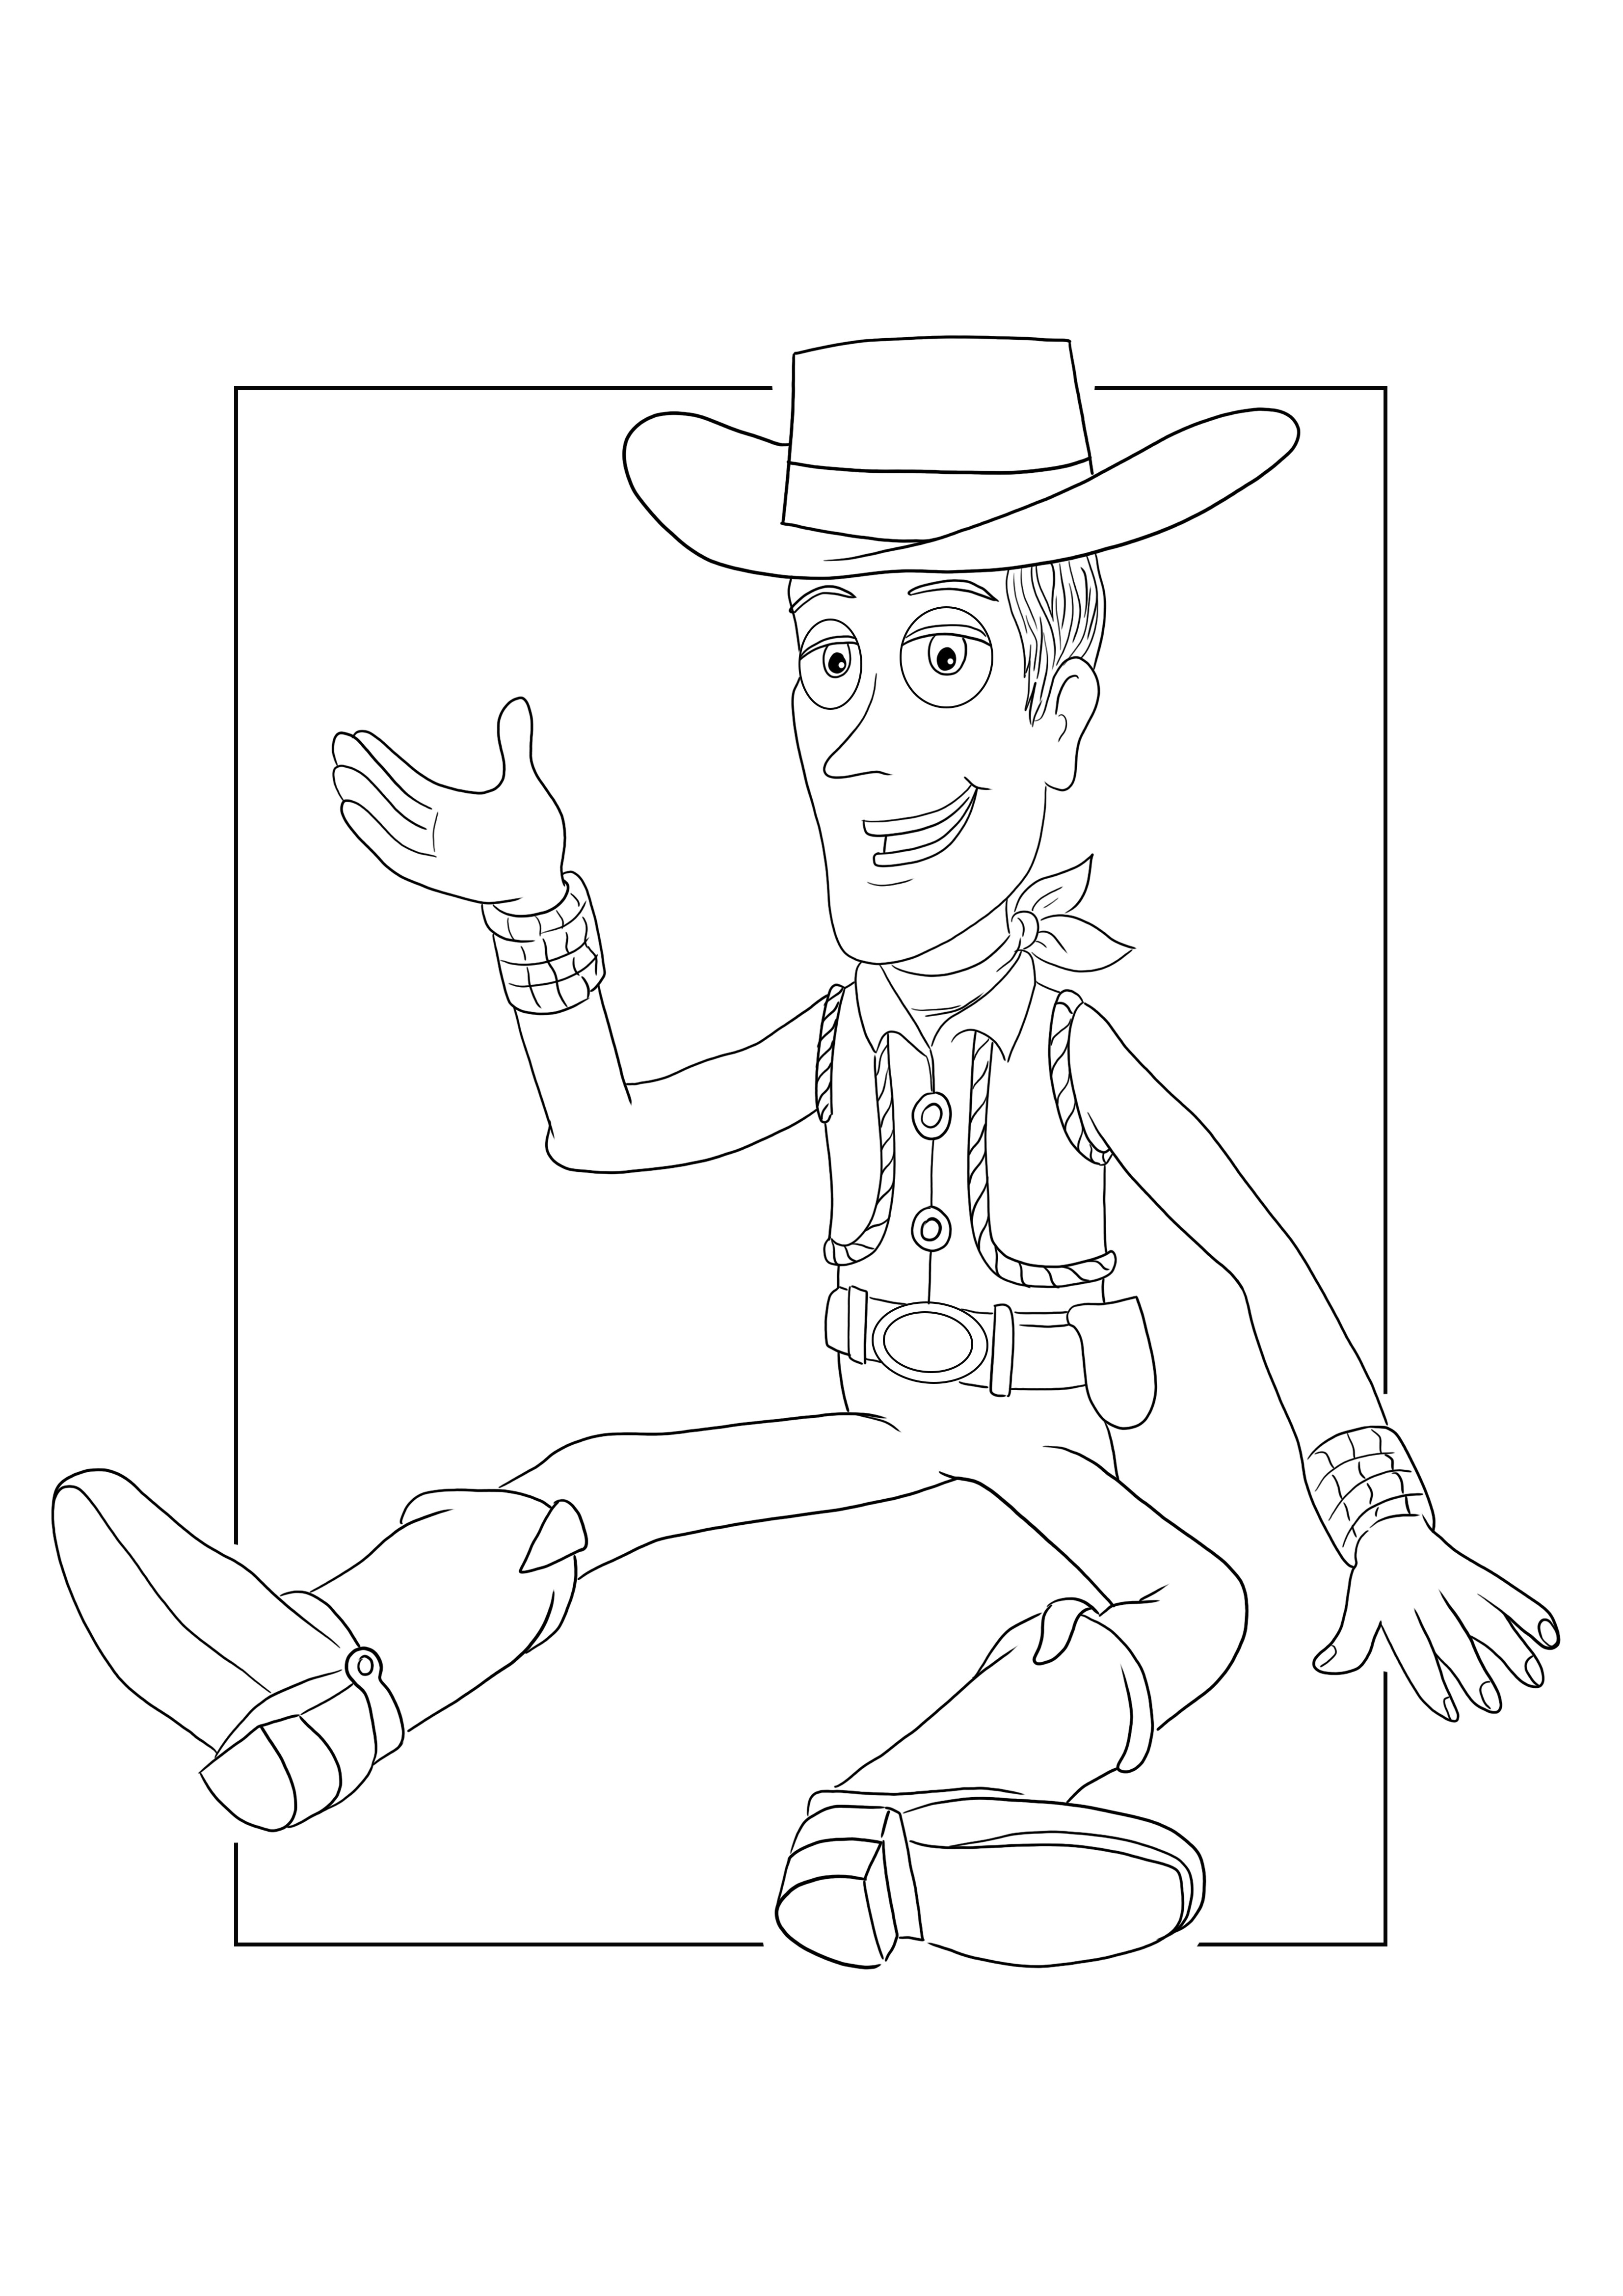 Coloriage et impression du shérif Woody pour une feuille gratuite pour les enfants